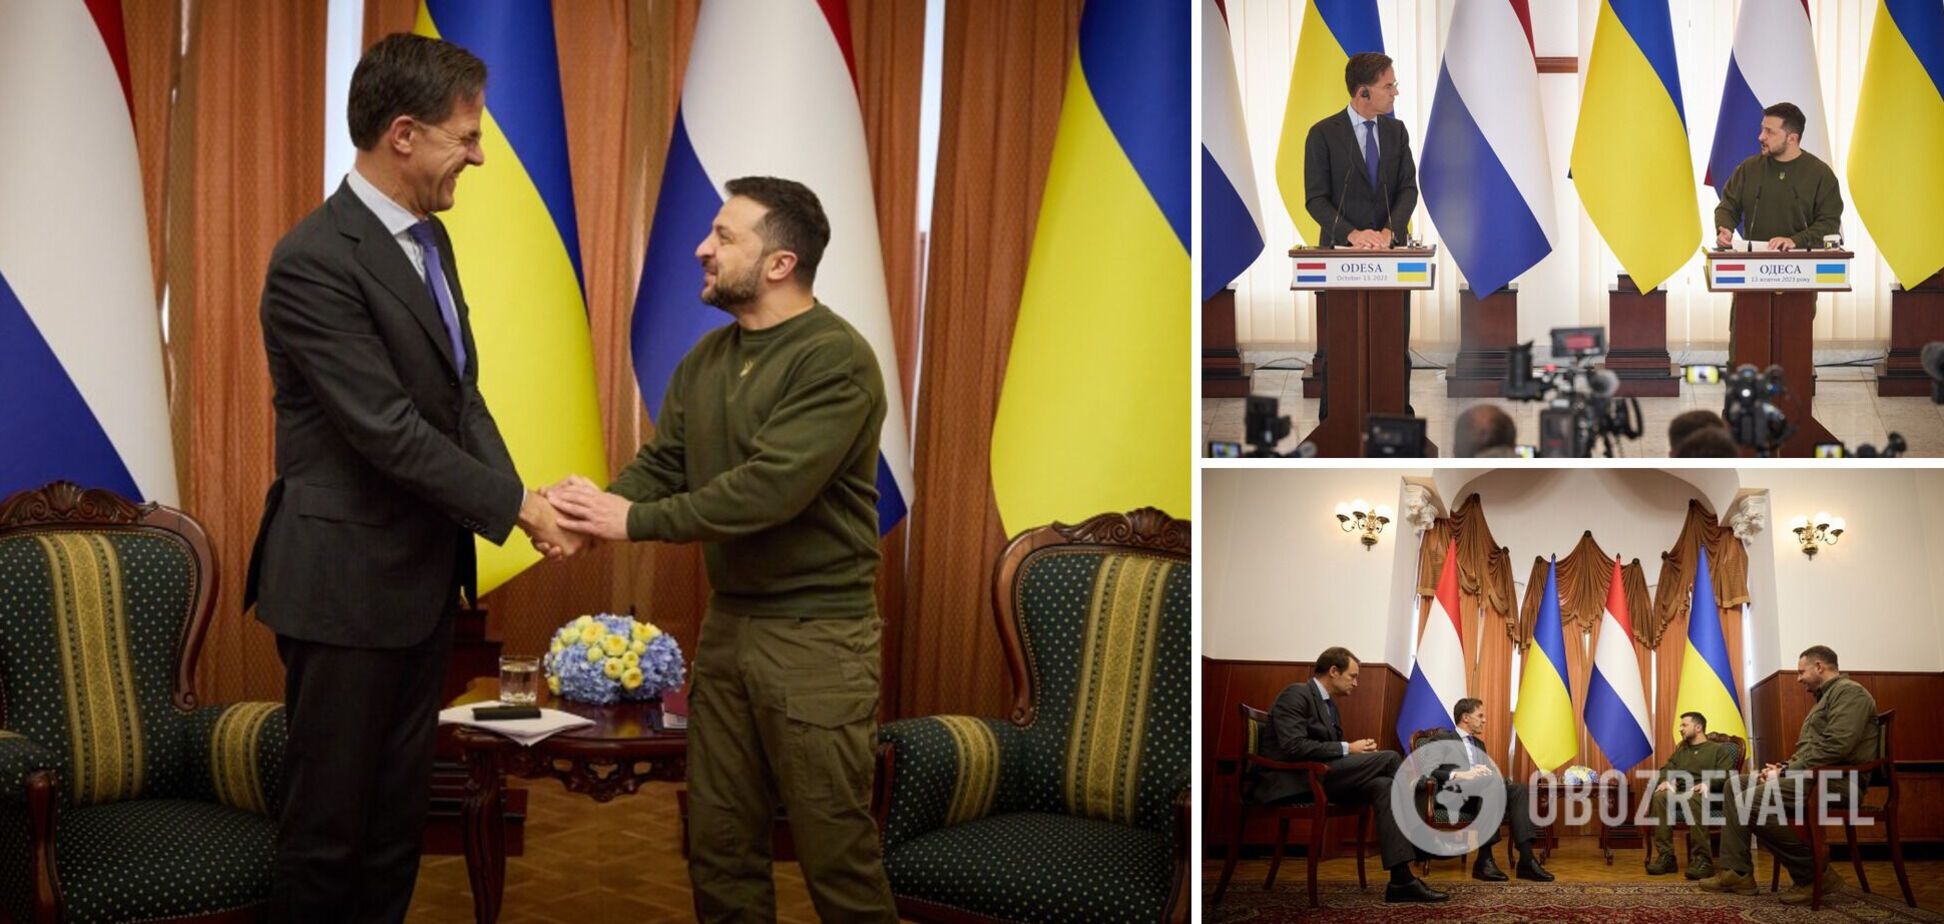 'Есть новое решение для усиления украинской ПВО': Зеленский в Одессе встретился с премьером Нидерландов Рютте. Видео